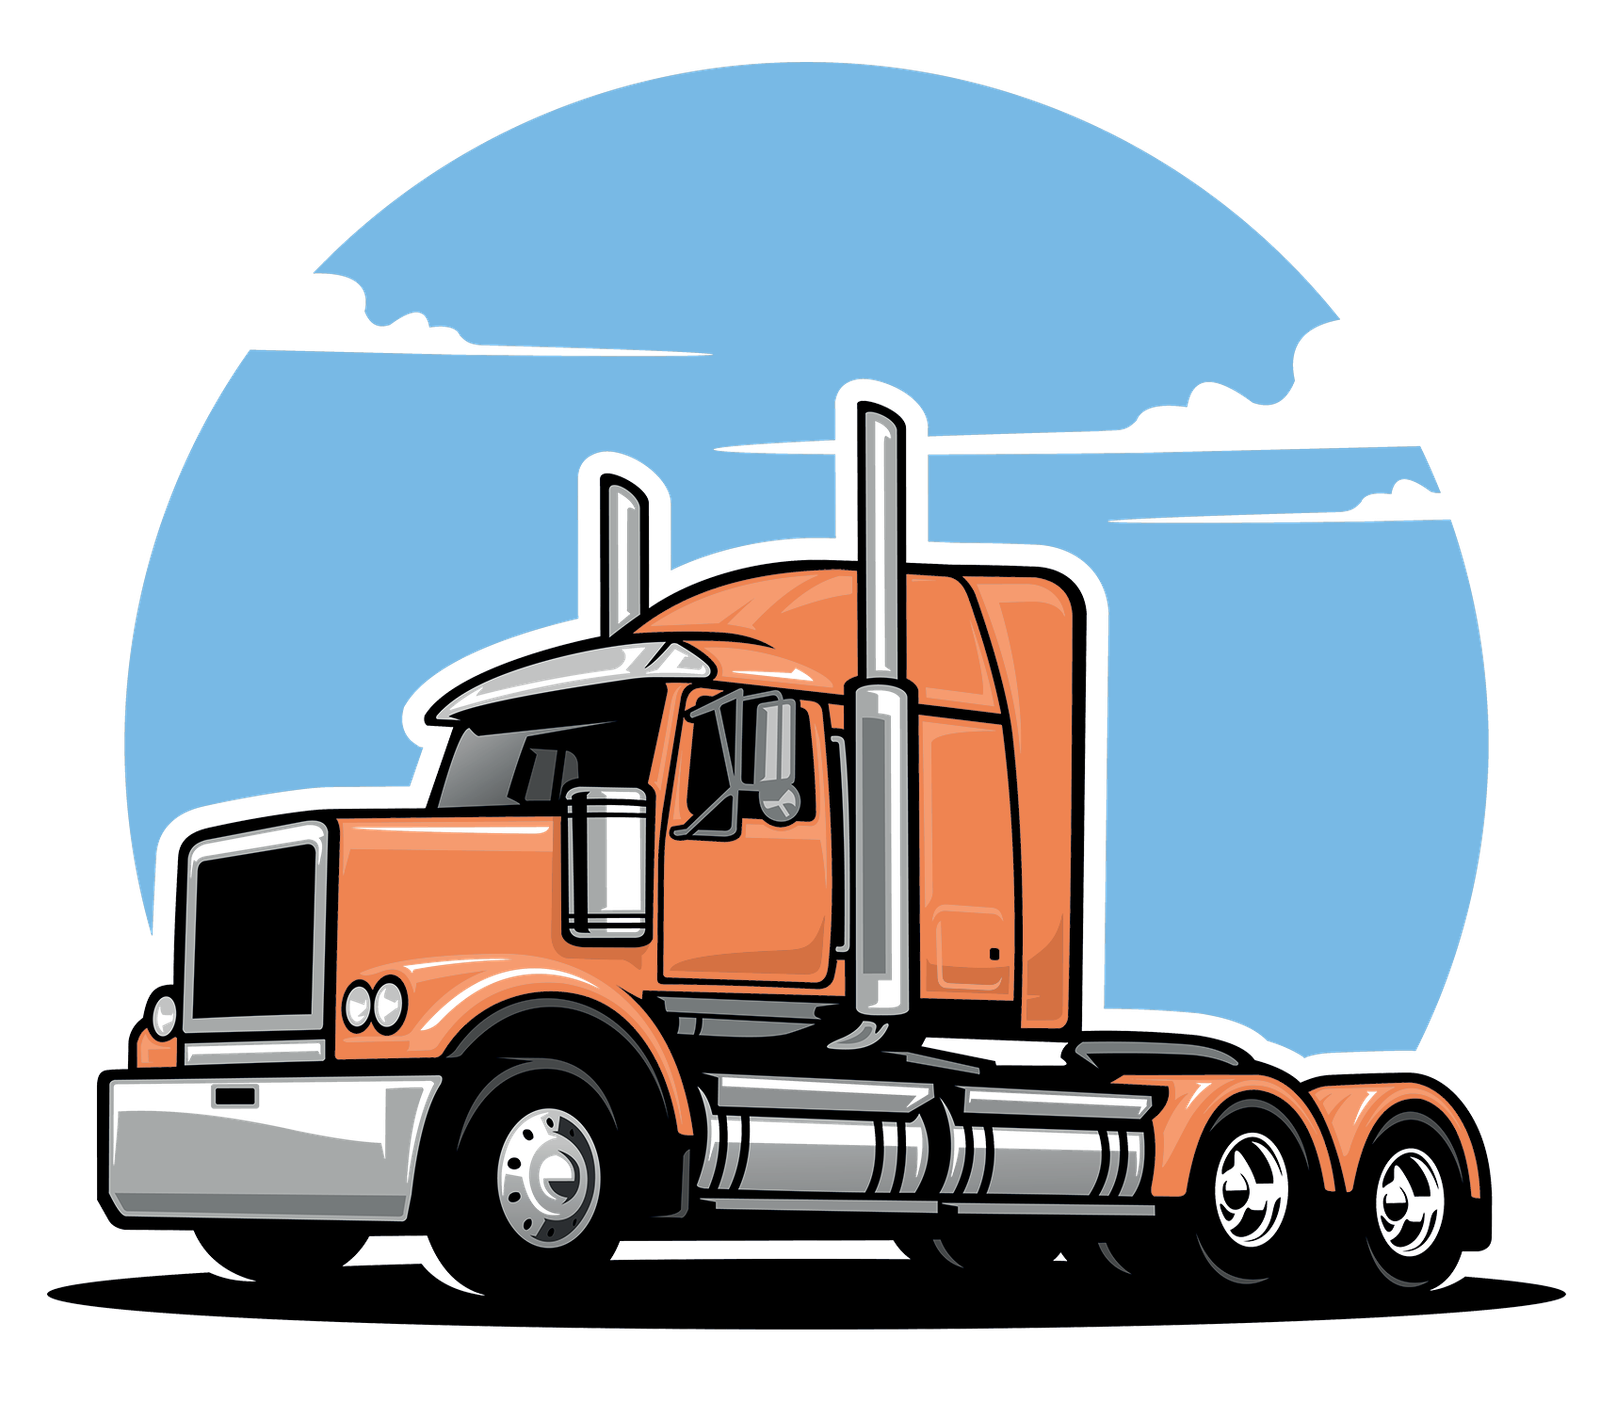 Trucking image